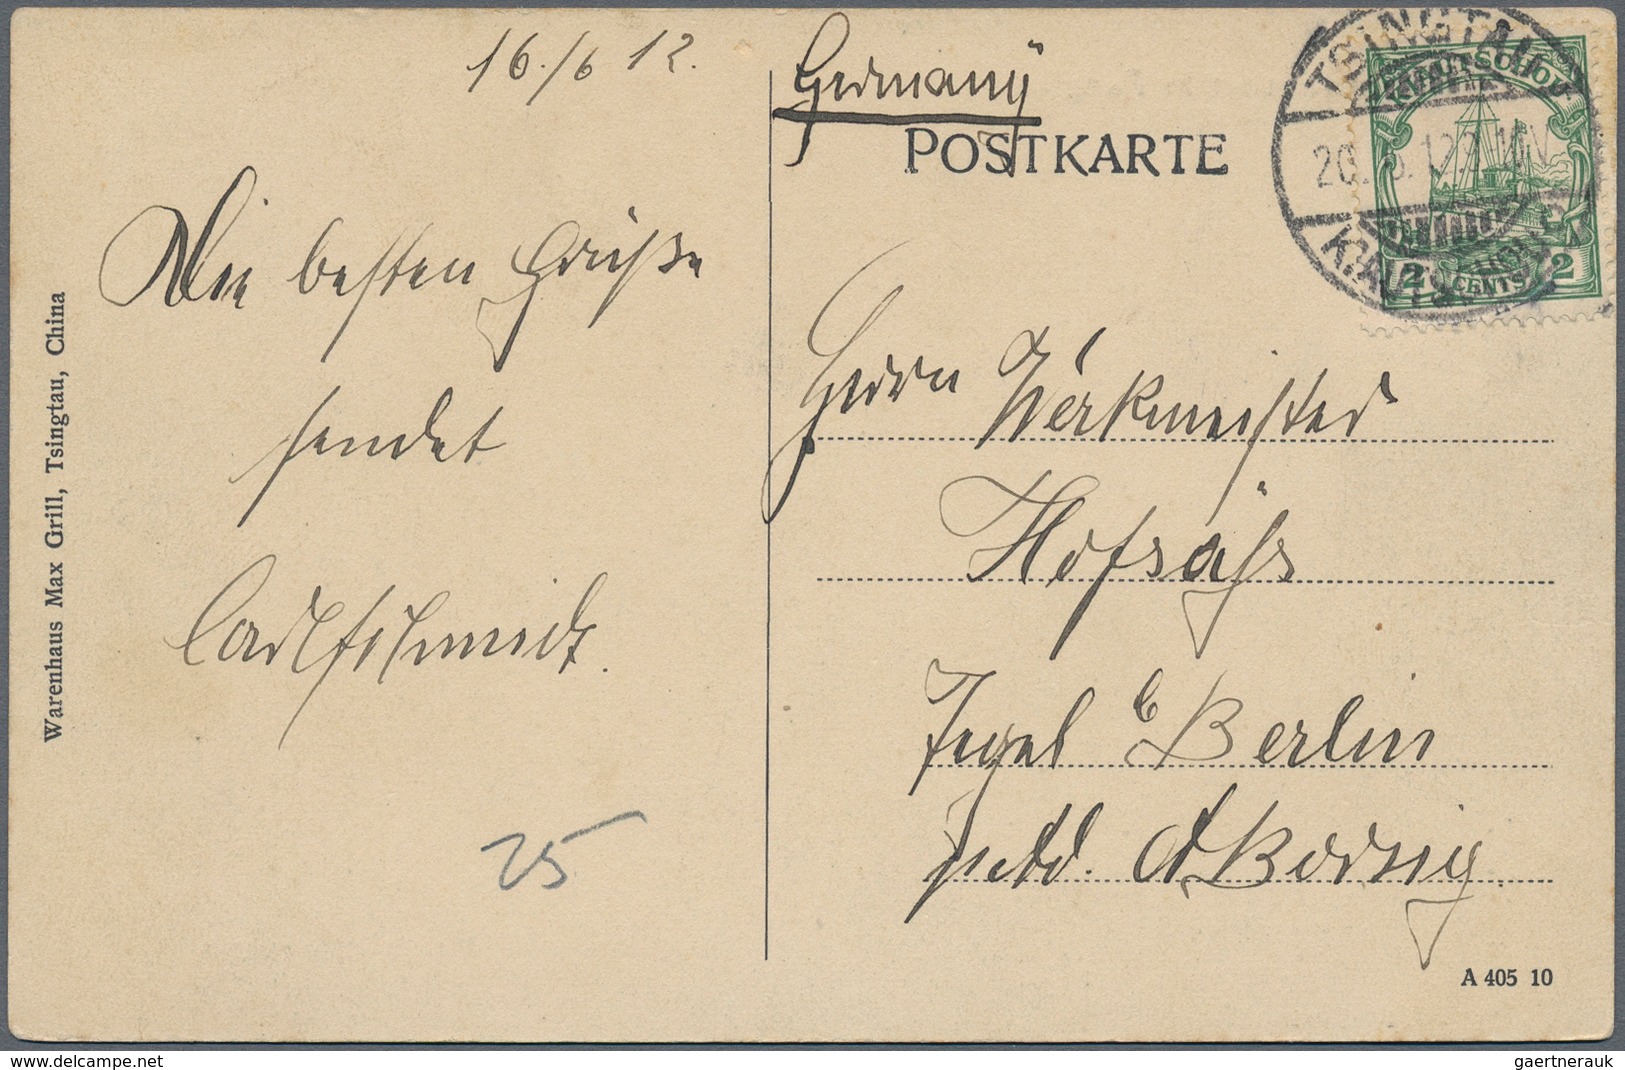 Deutsche Kolonien - Kiautschou: 1898, Brief ab "TAITUNGTSCHEN" 1910, AK (10) mit u.a. "TSINTAU" (2),